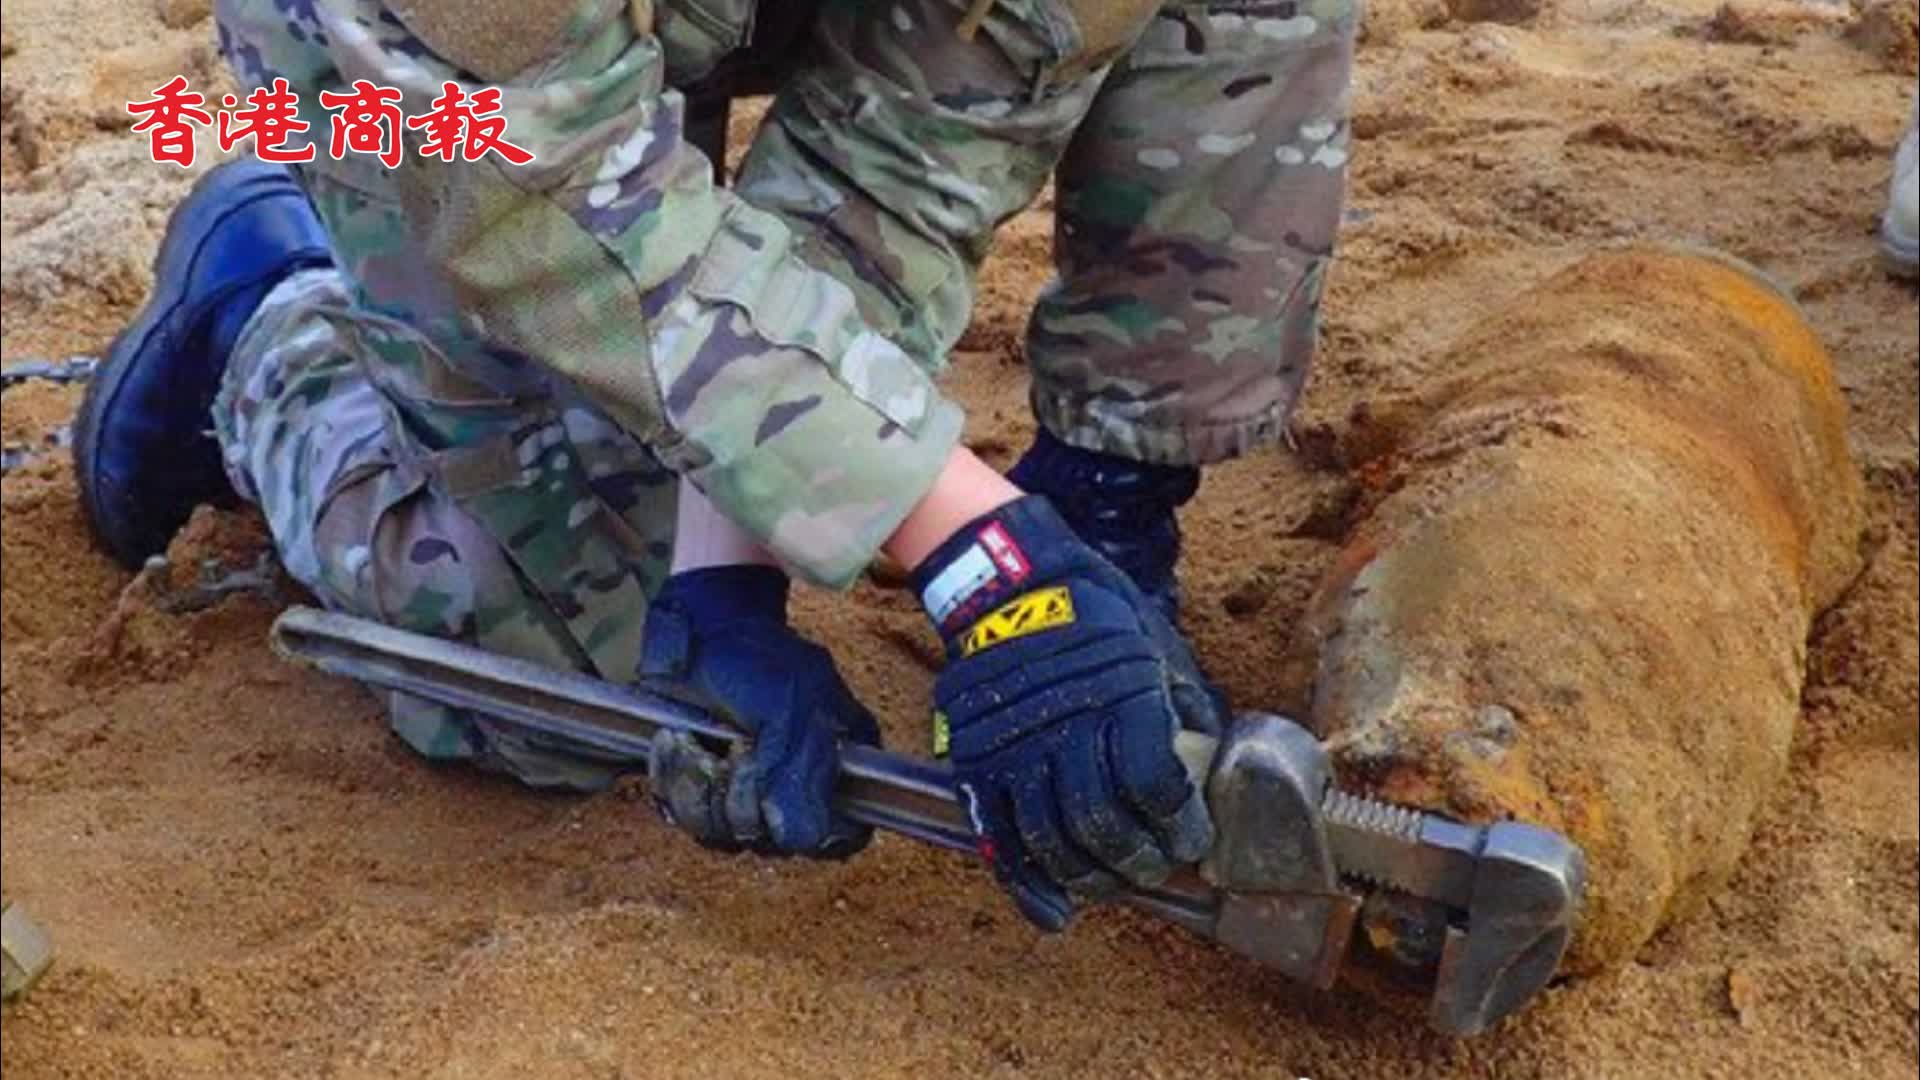 有片 | 韓國仁川工地挖出美軍航空炸彈 疑似韓戰時投下 重90斤